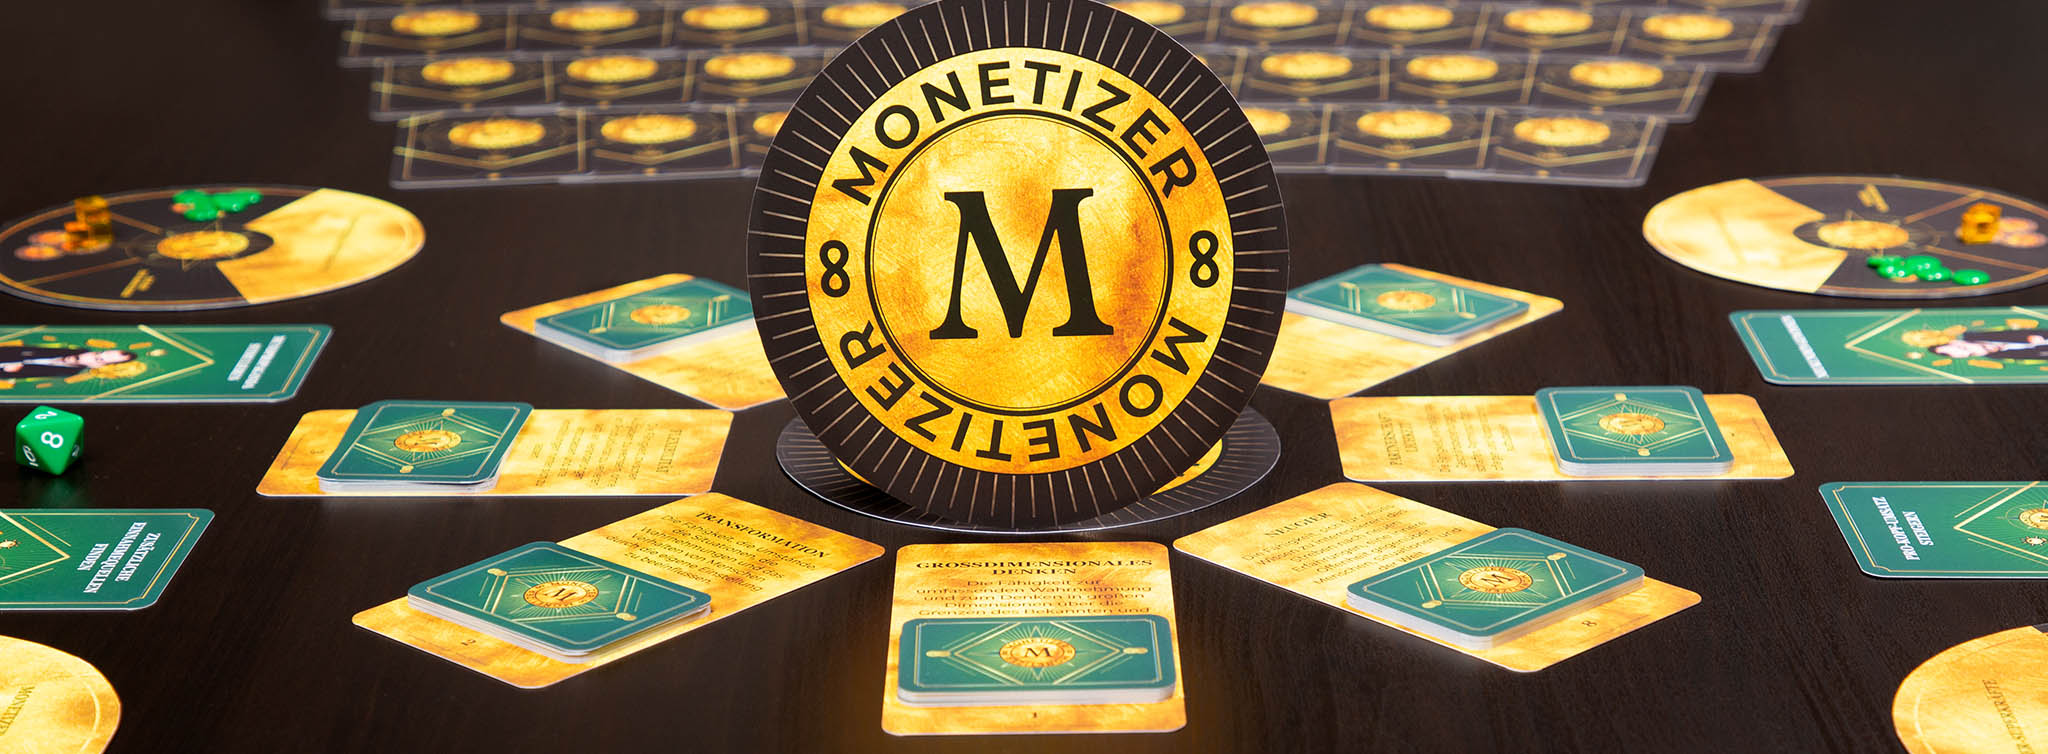 Das Monetizer-Spiel wird in Online- und Offline-Formaten angeboten